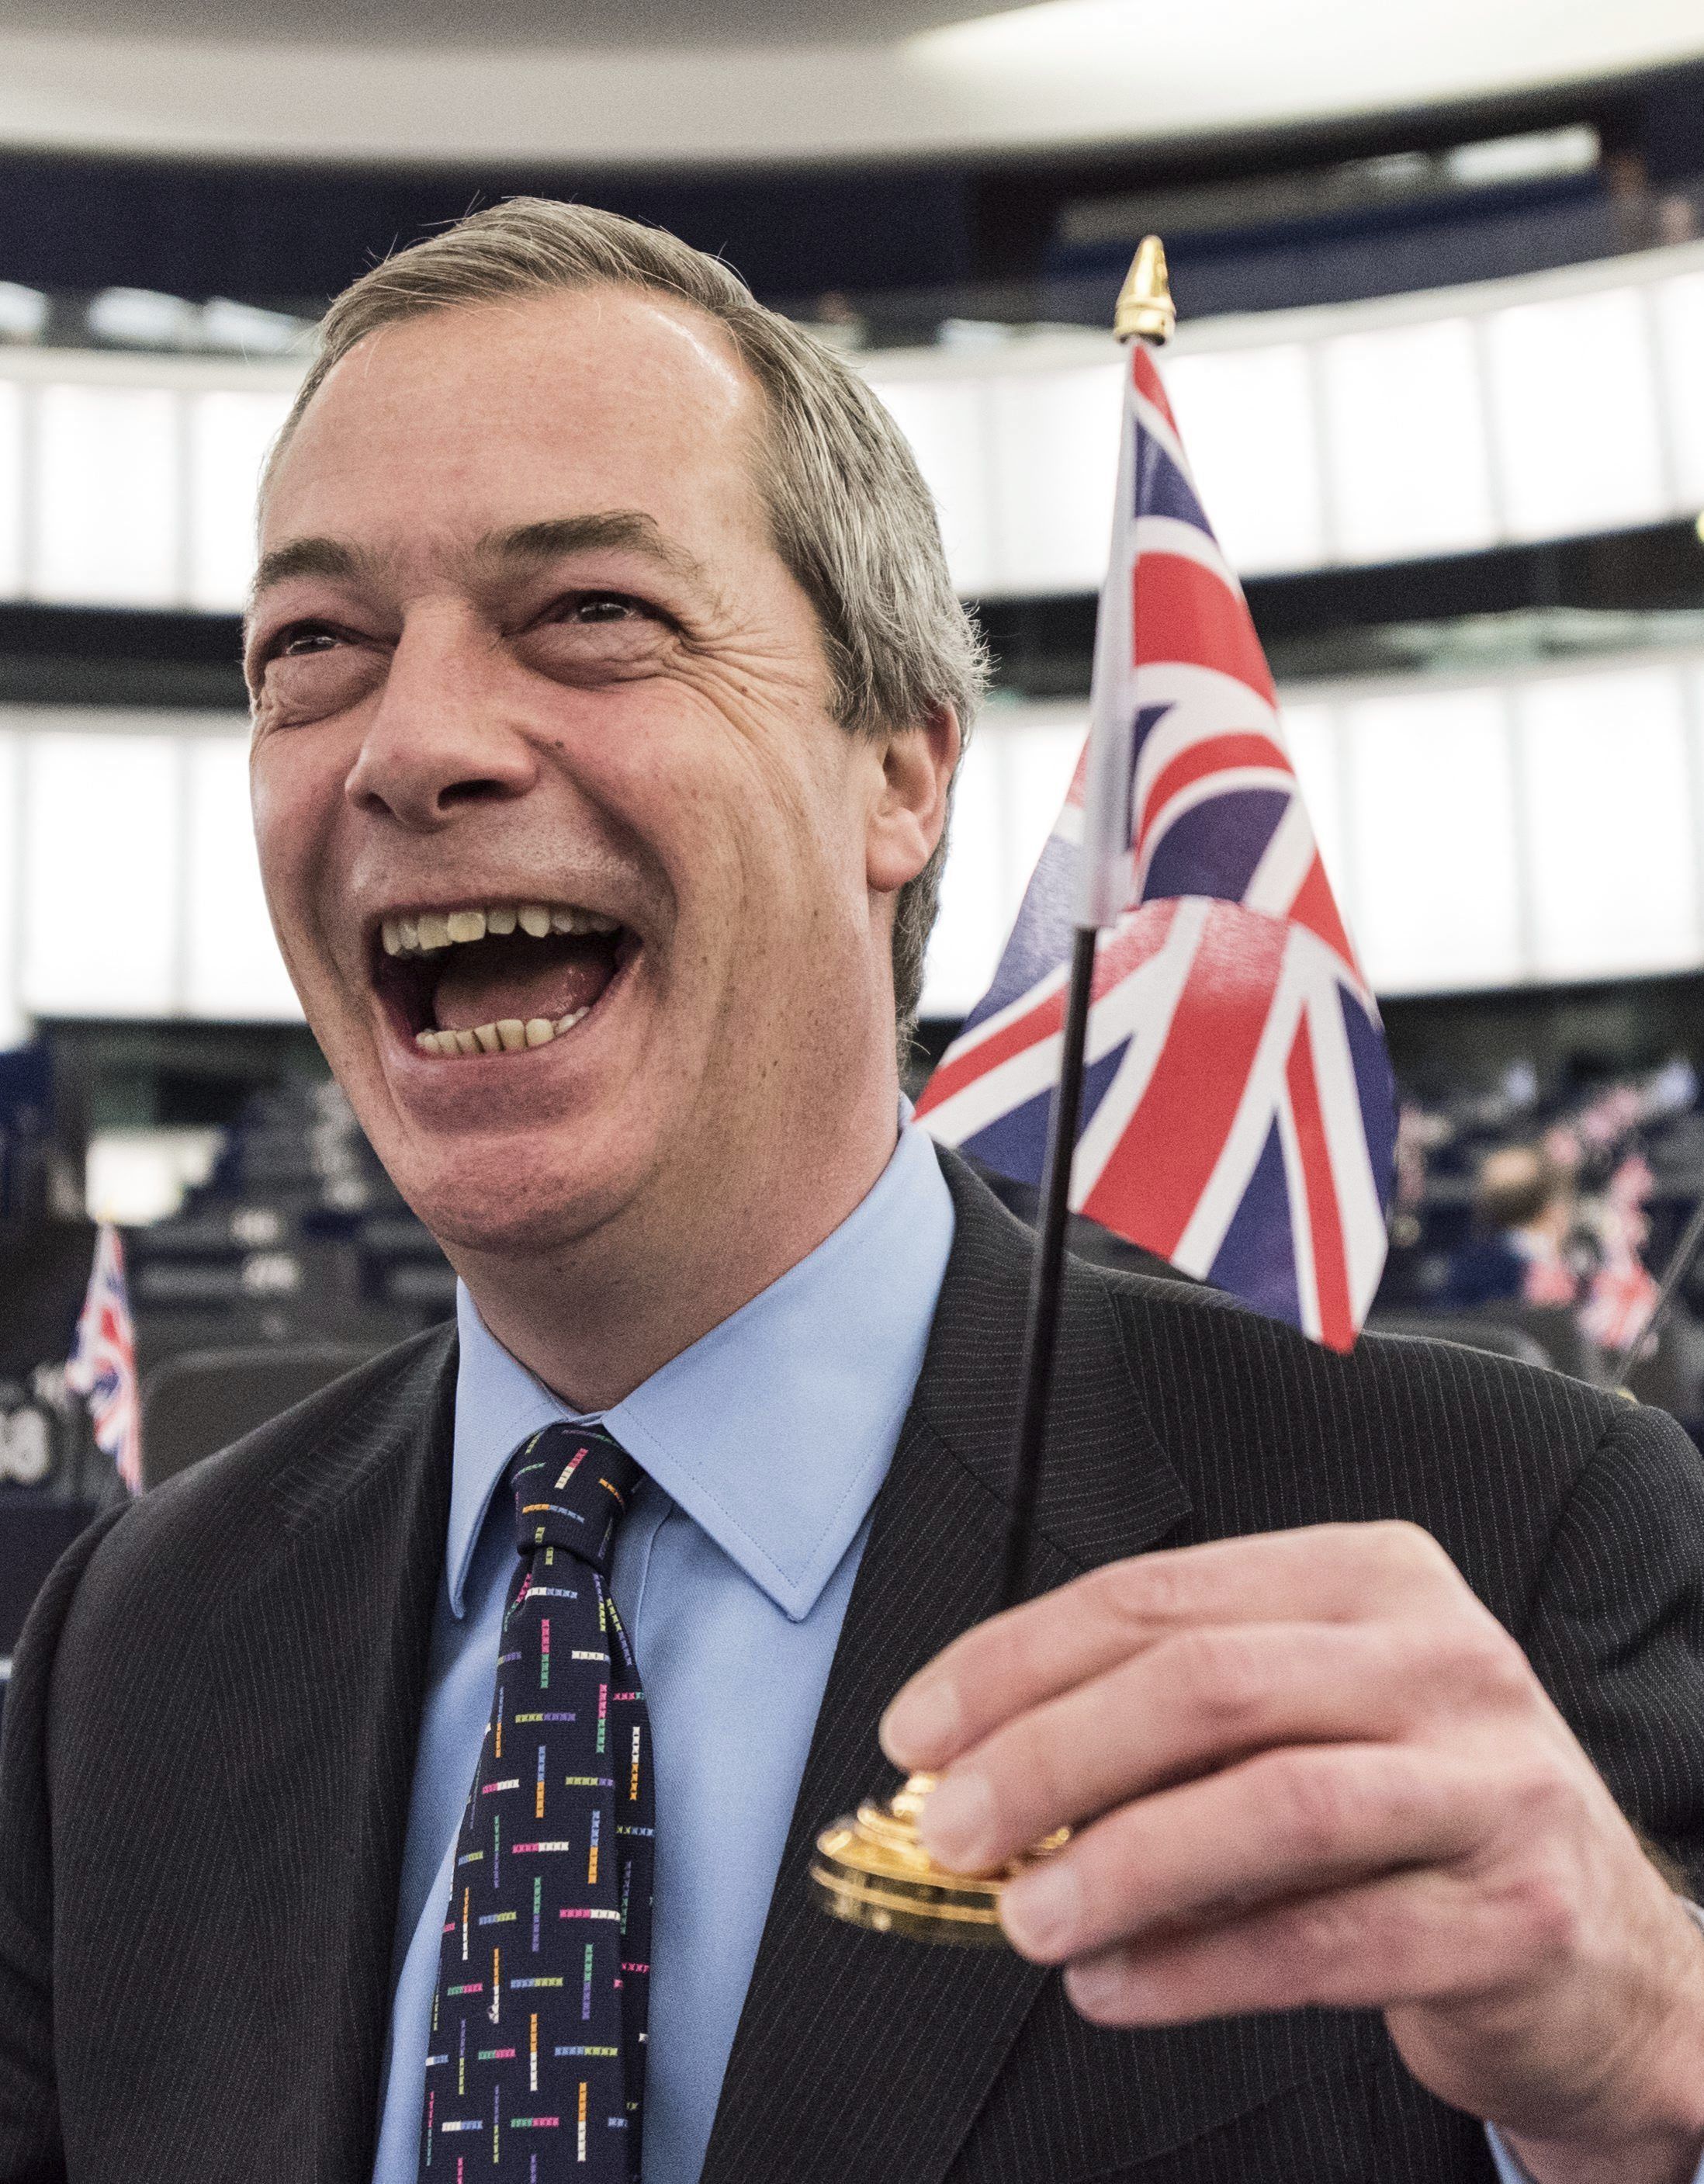 Dimite Nigel Farage, líder del UKIP y partidario del Brexit